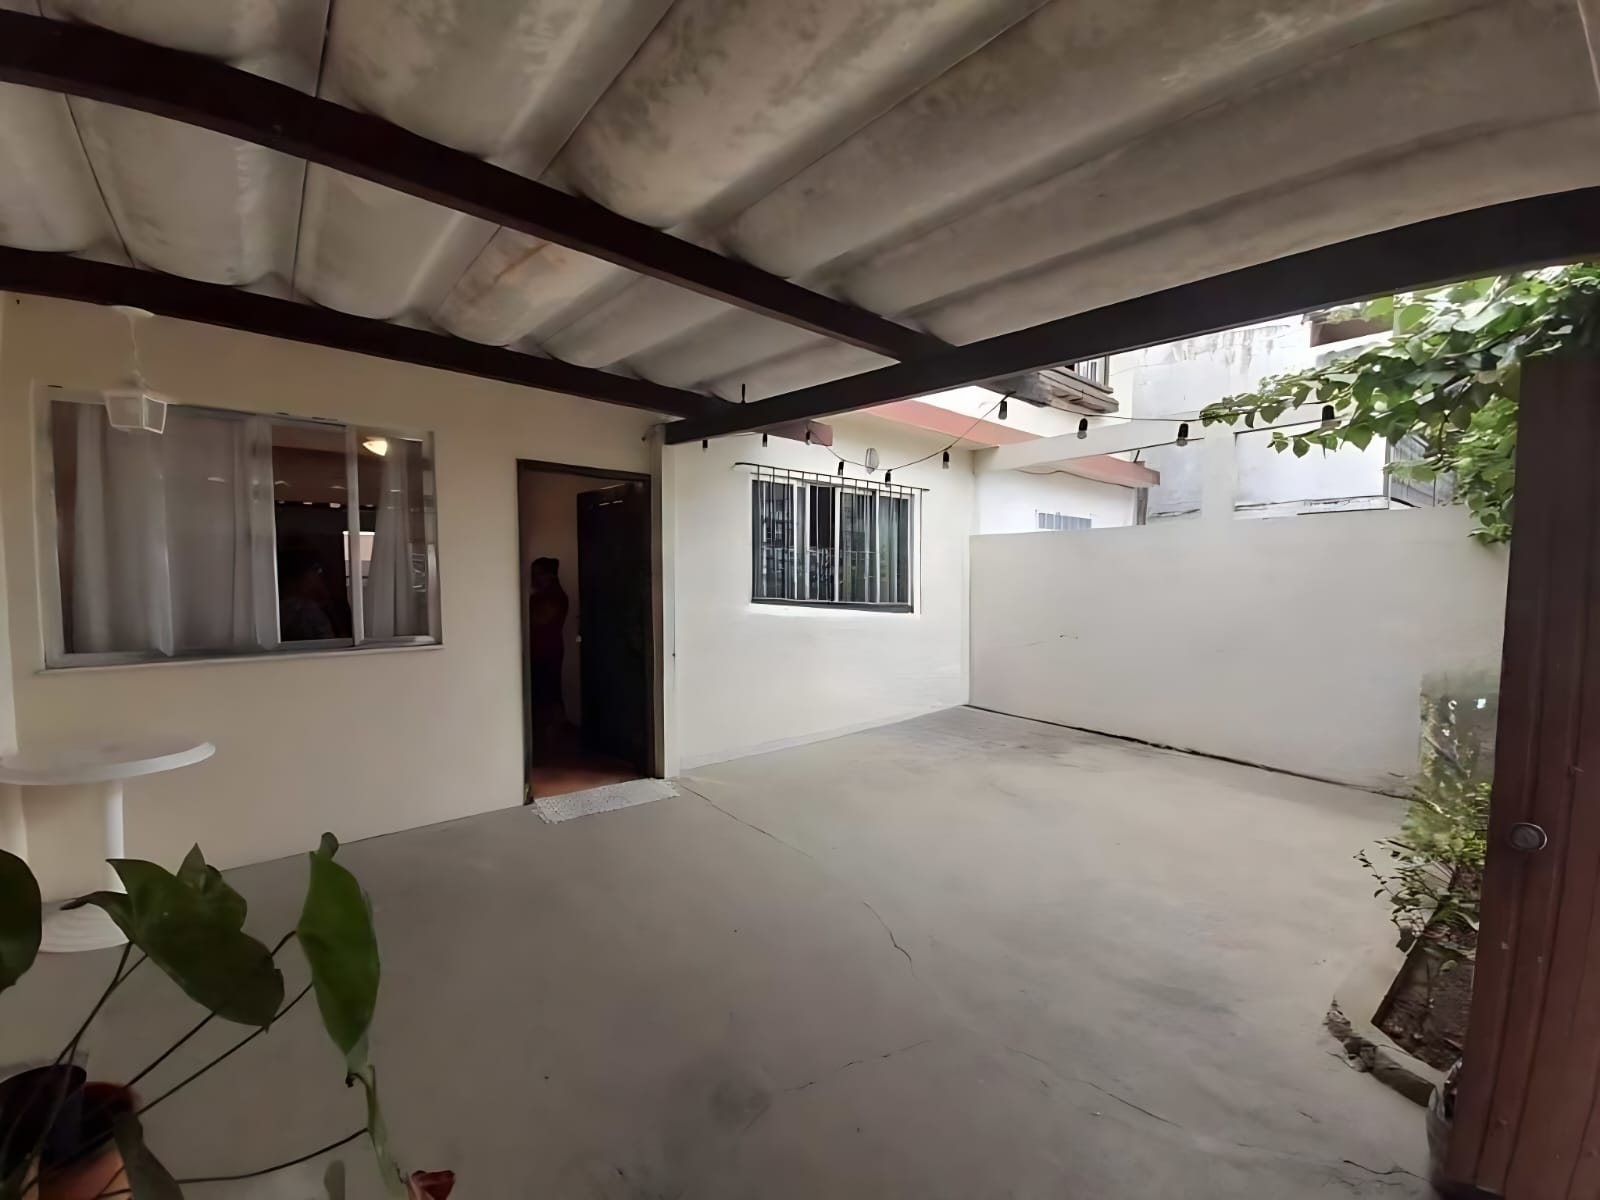 Casa à venda com RGI 3 quartos no bairro Canaã.